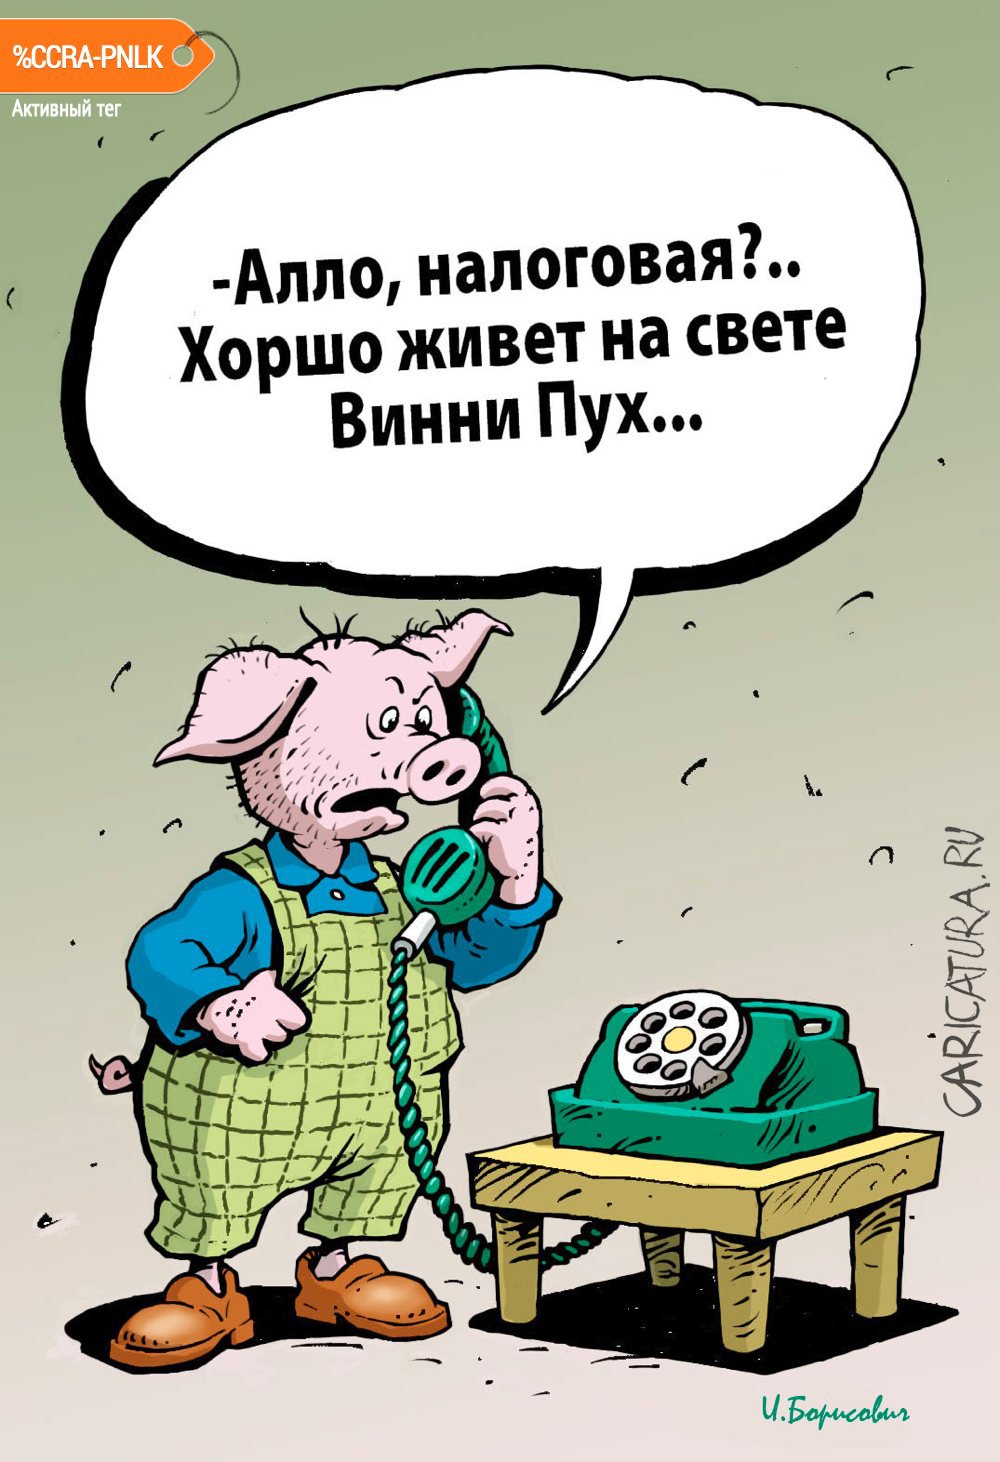 Карикатура "Винни Пух", Игорь Елистратов